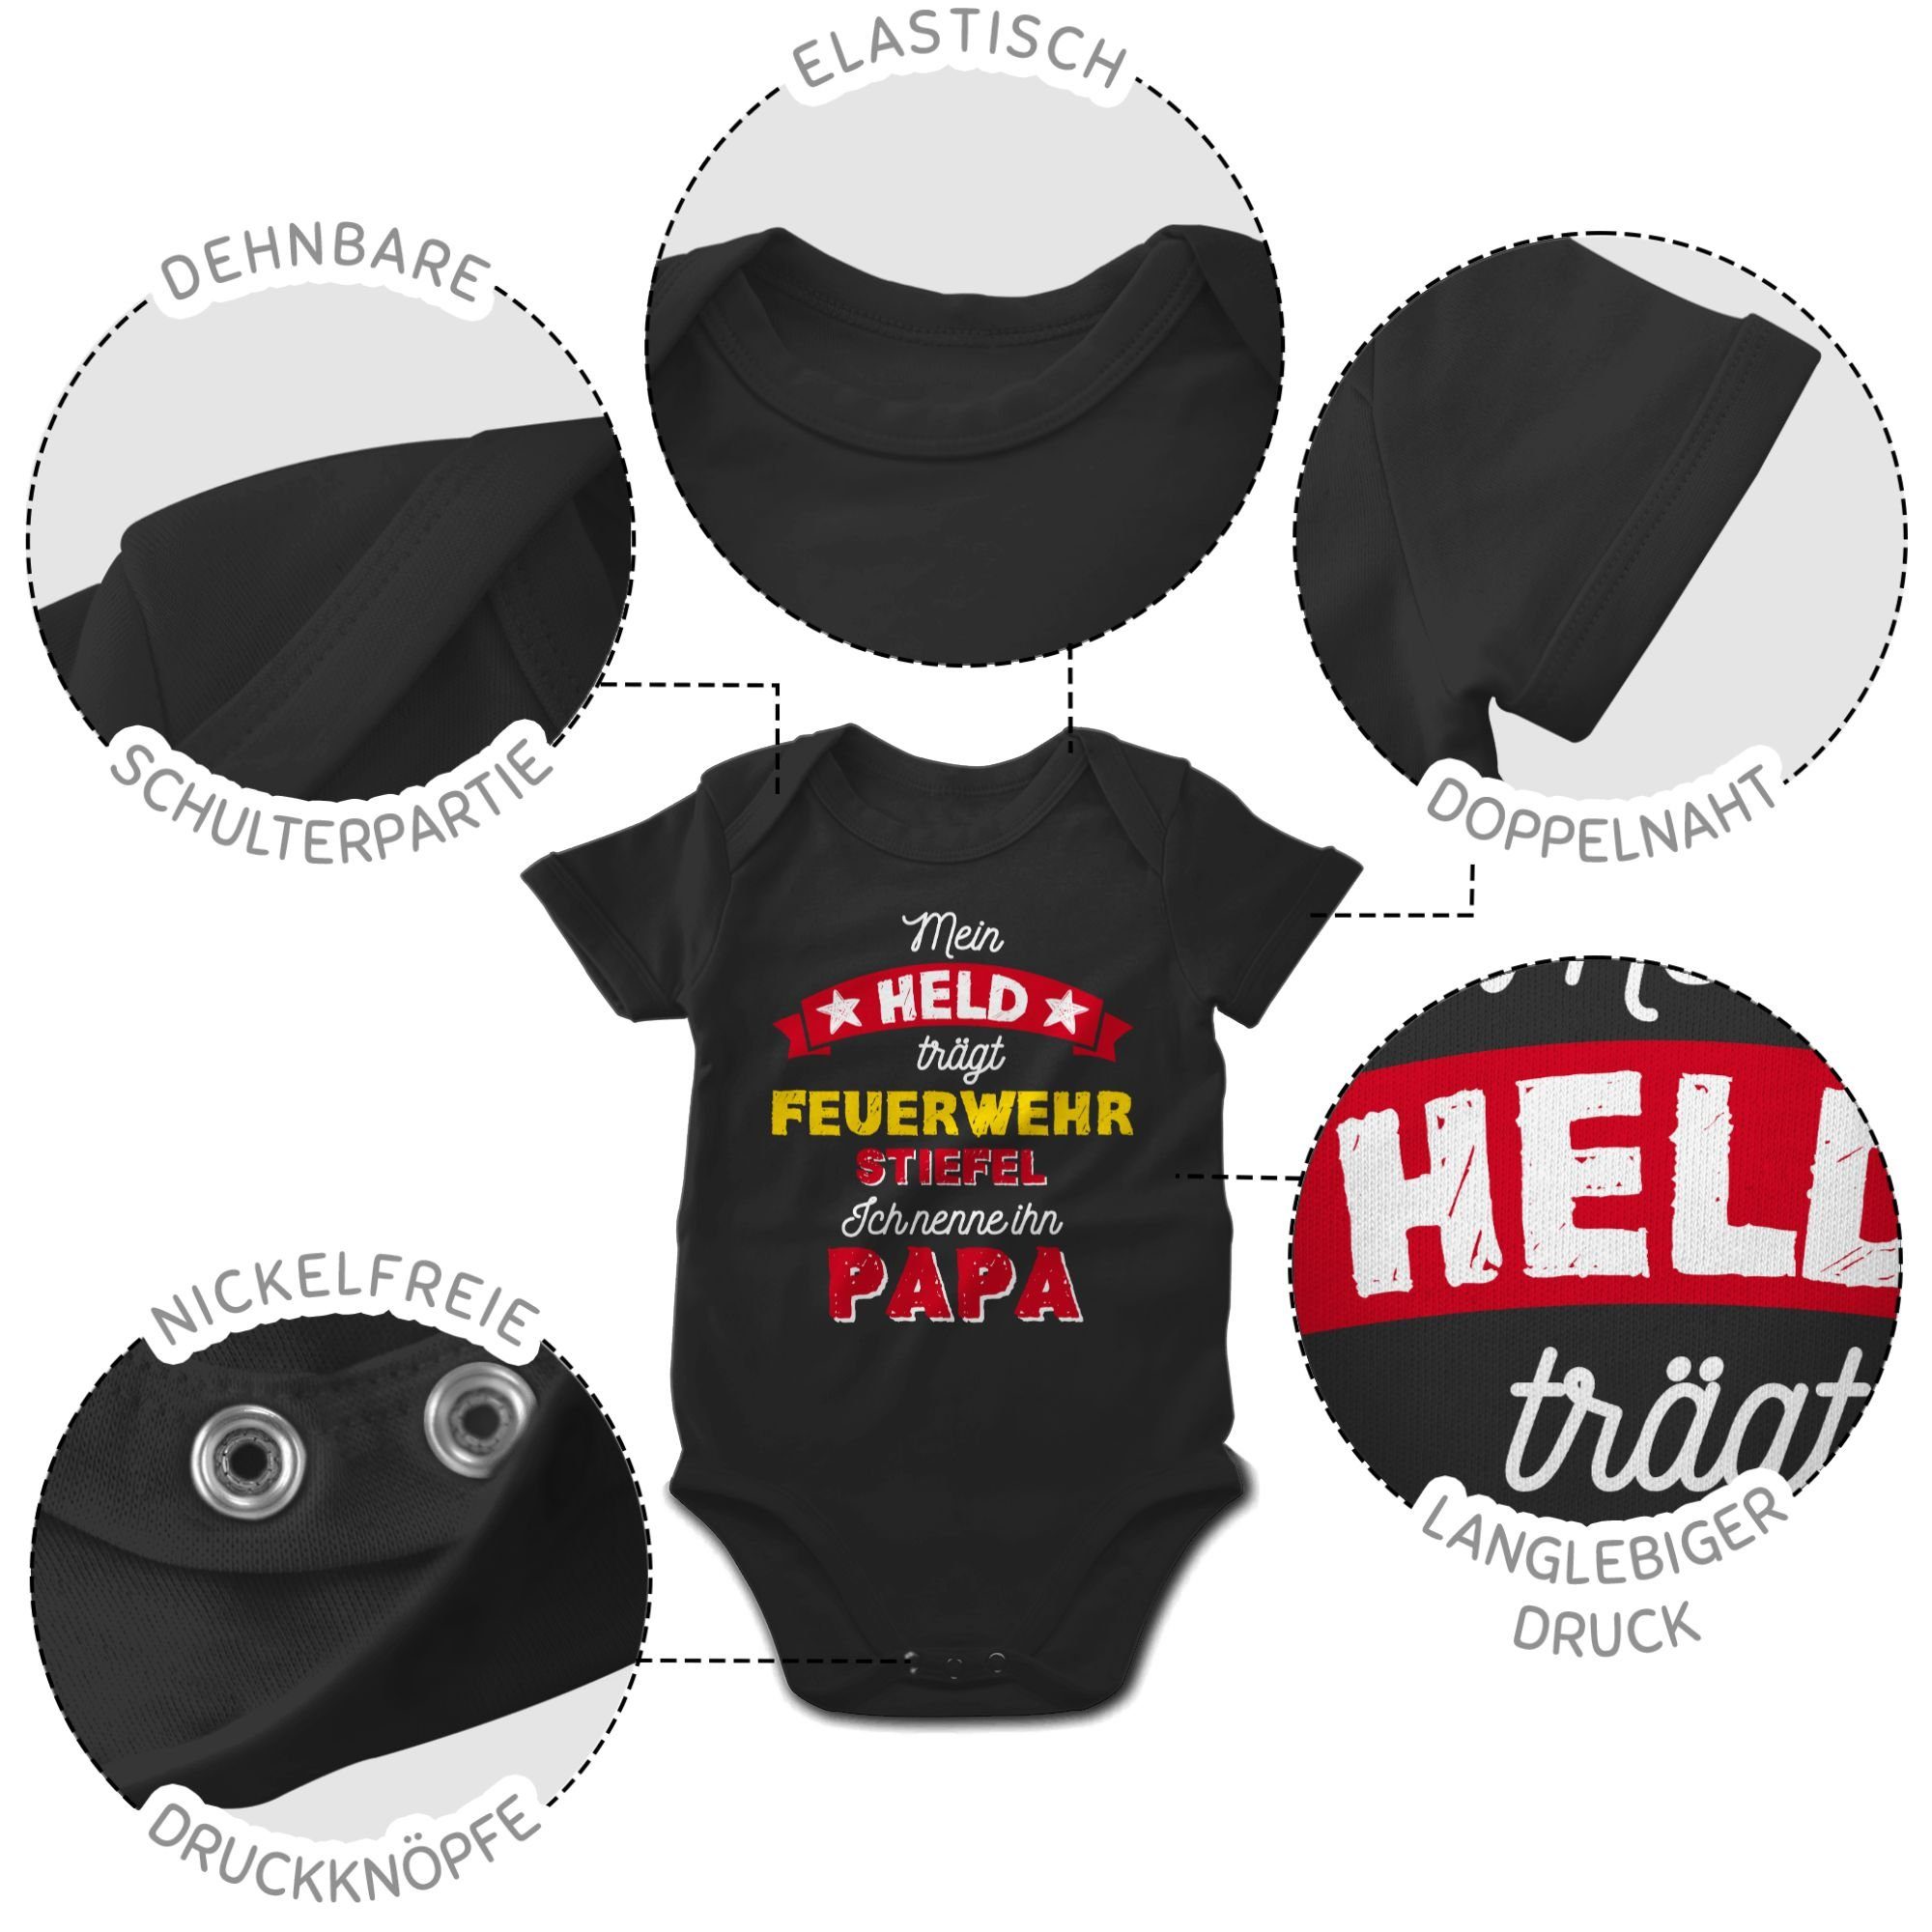 Shirtracer Shirtbody Mein Held trägt Baby Feuerwehrstiefel Schwarz Geschenk 2 Vatertag